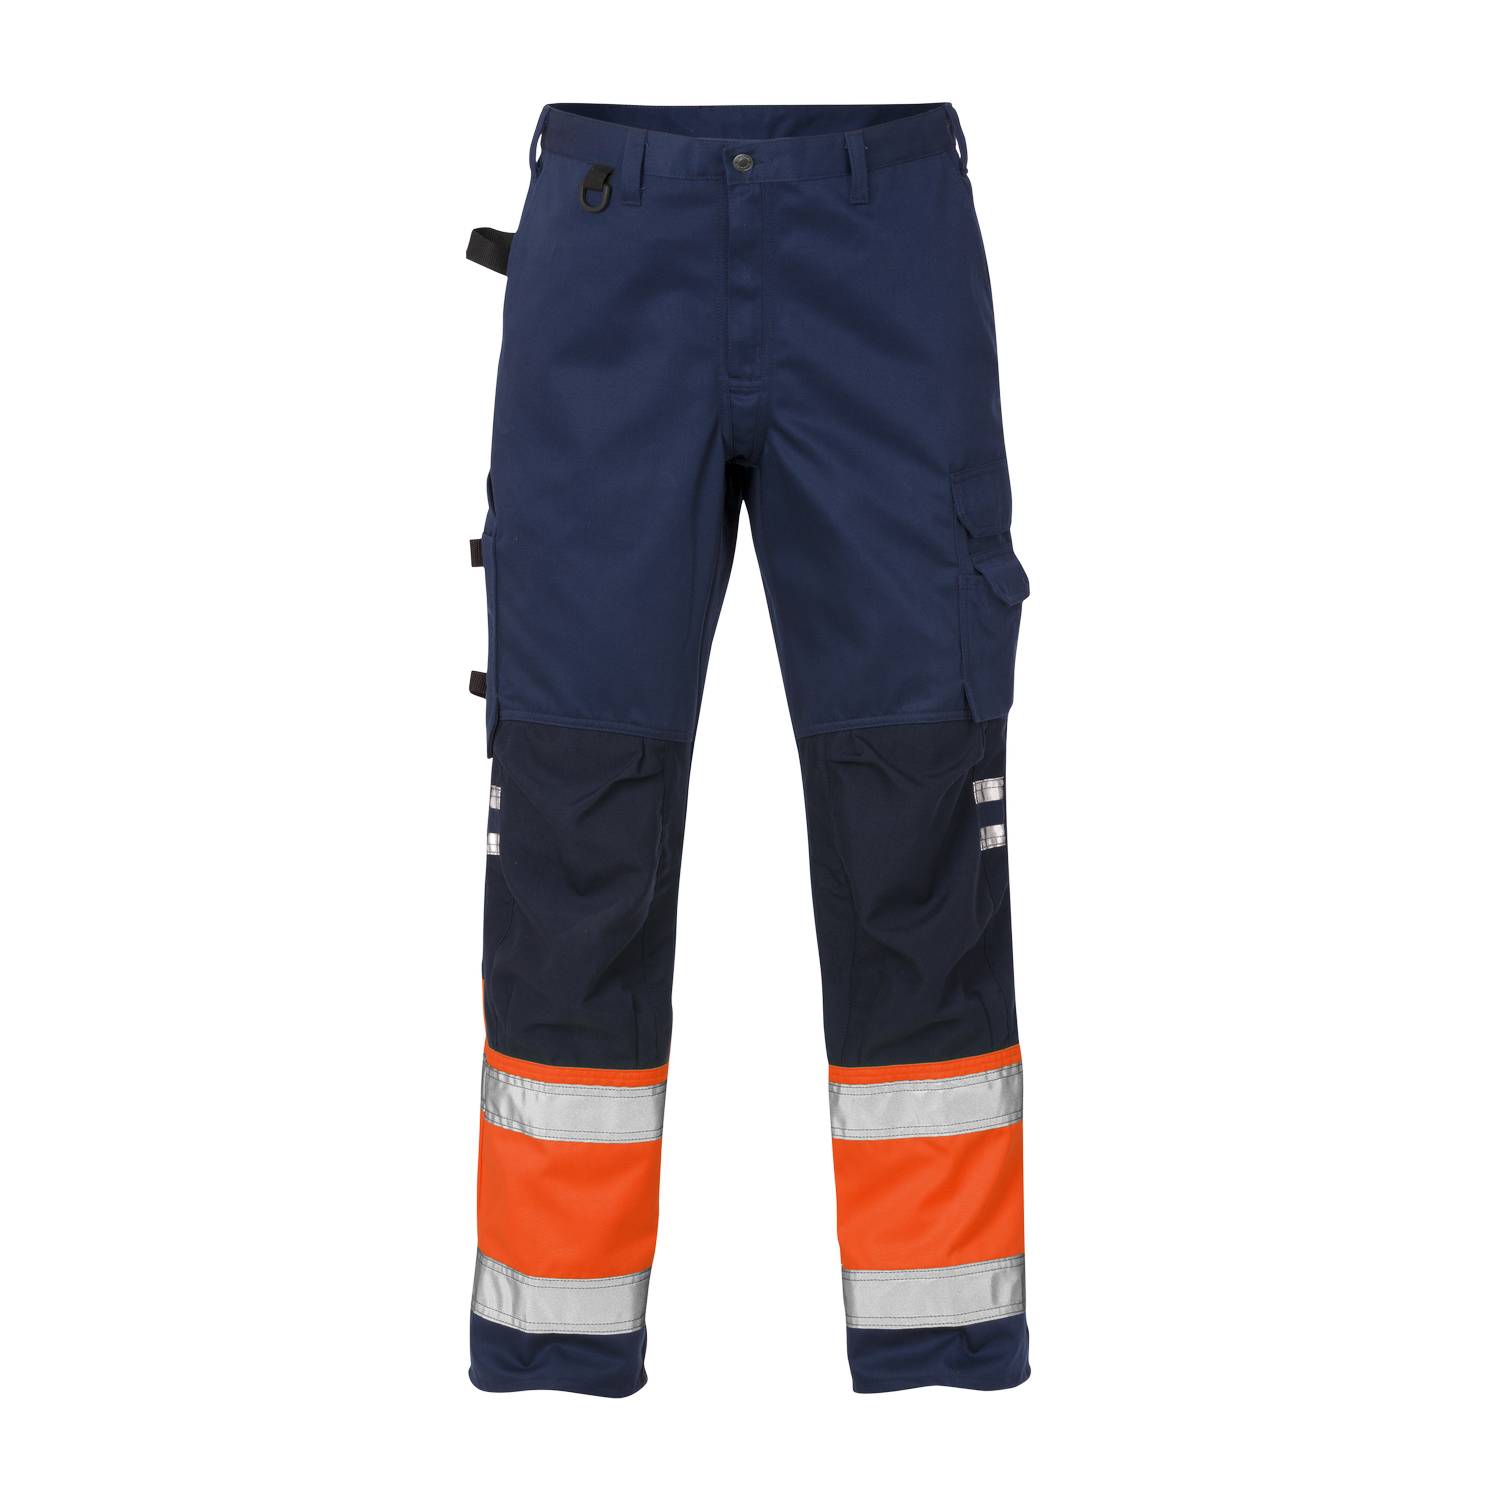 Fristads visokovidljive radne hlače 100979-271